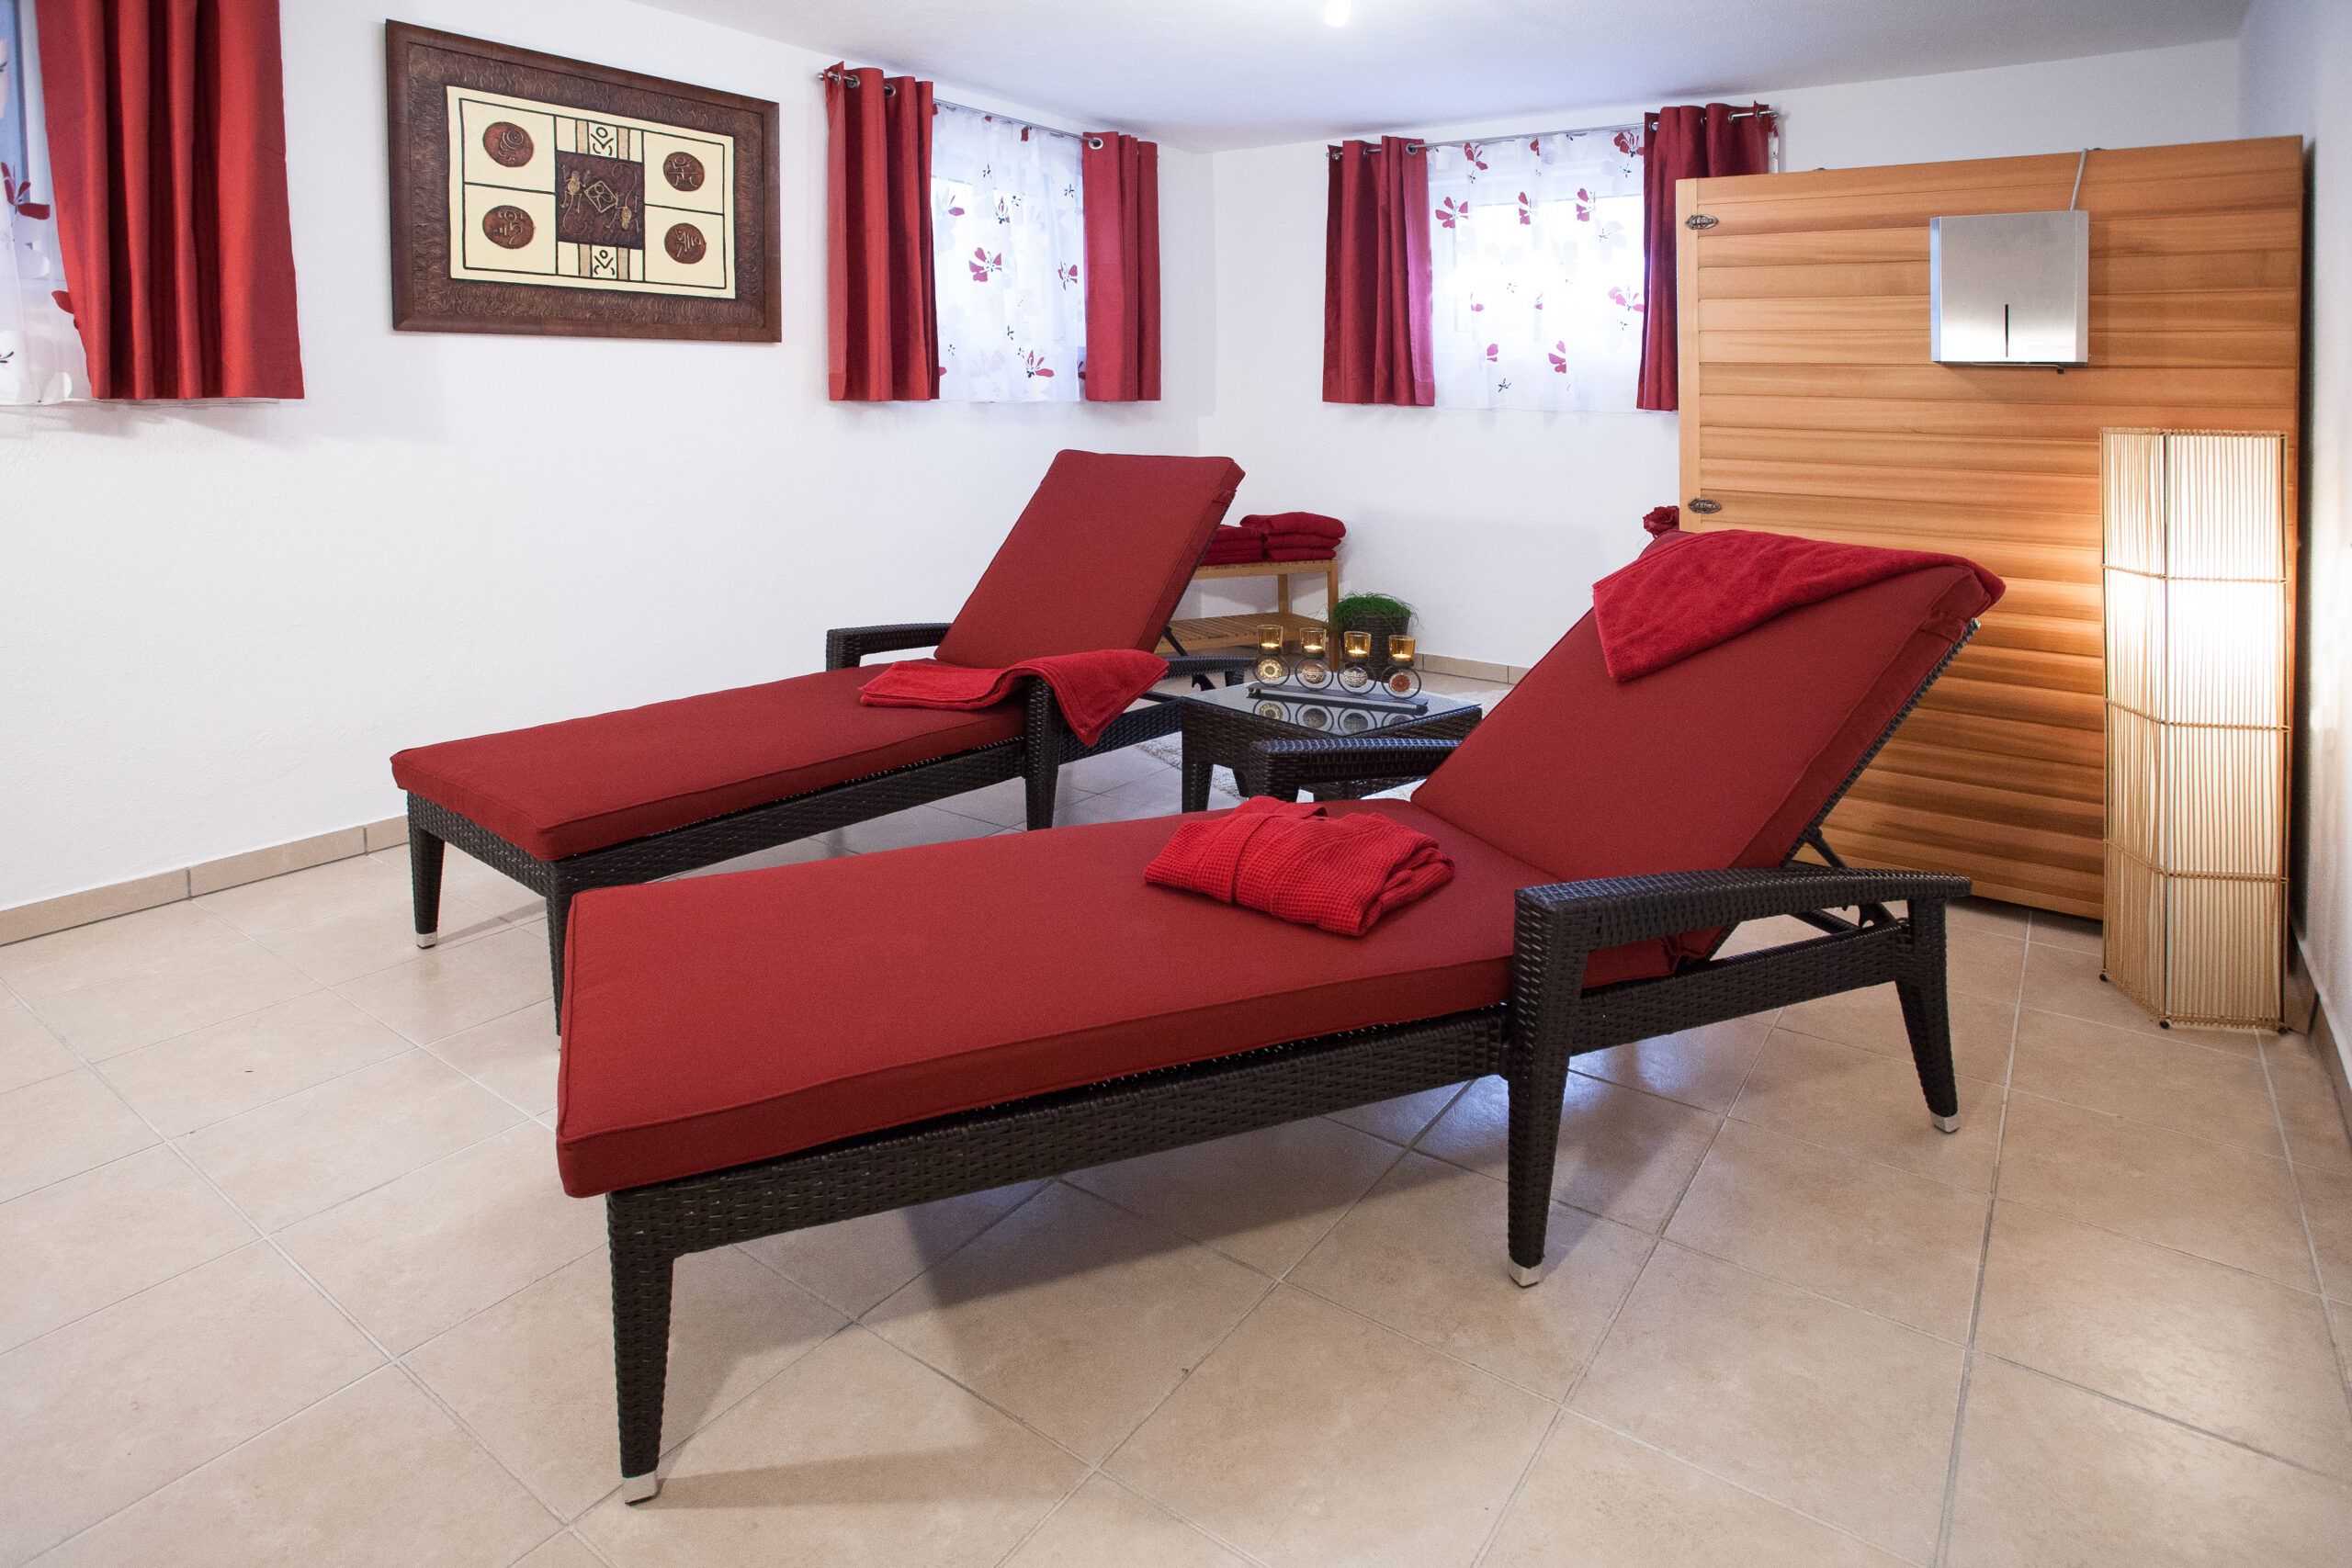 Zwei rote Liegestühle in einem Raum.